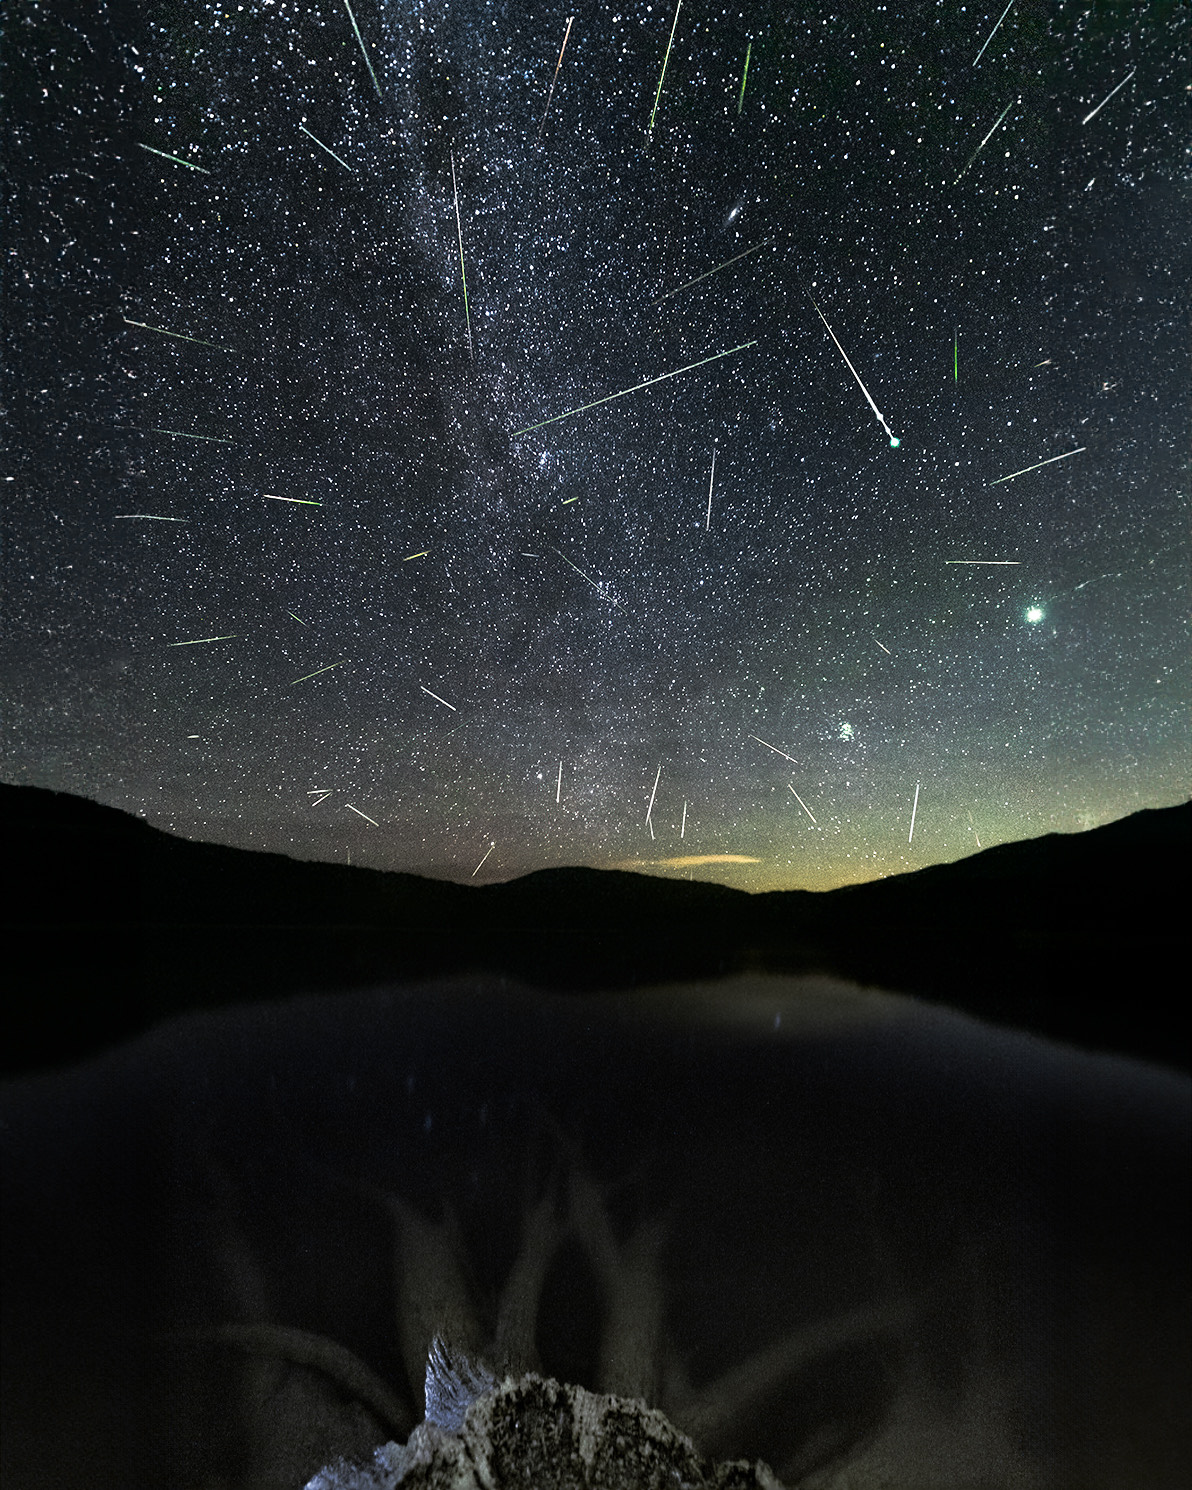 Yıldızlı bir gökyüzüne ve doğal bir ön plana karşı bir meteor yağmuru tasvir edilmiştir.